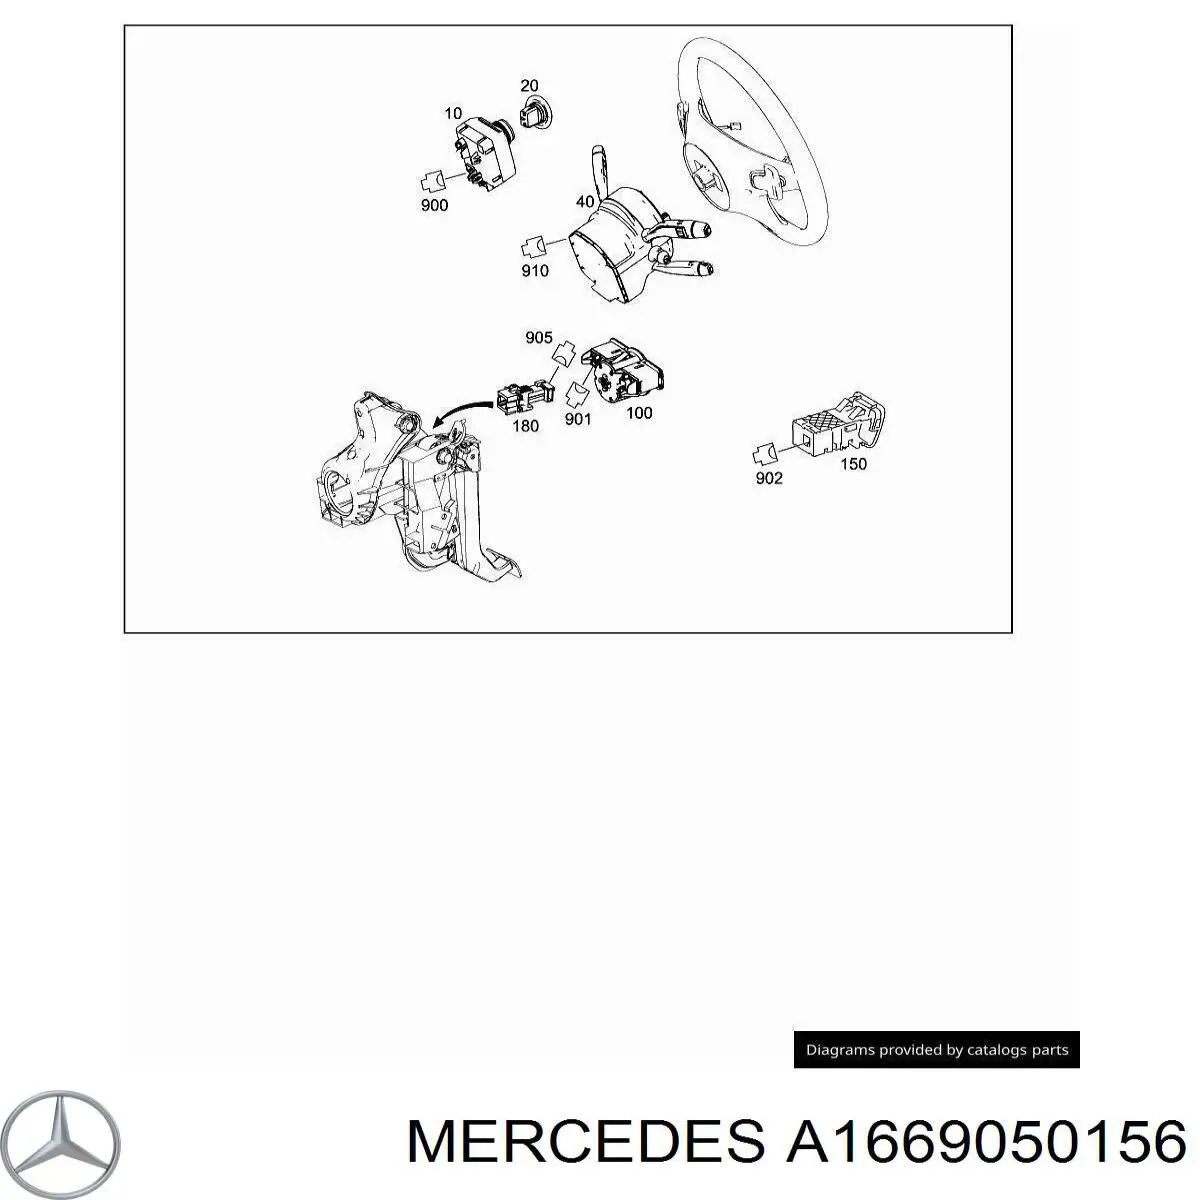 166905015605 Mercedes conmutador de arranque